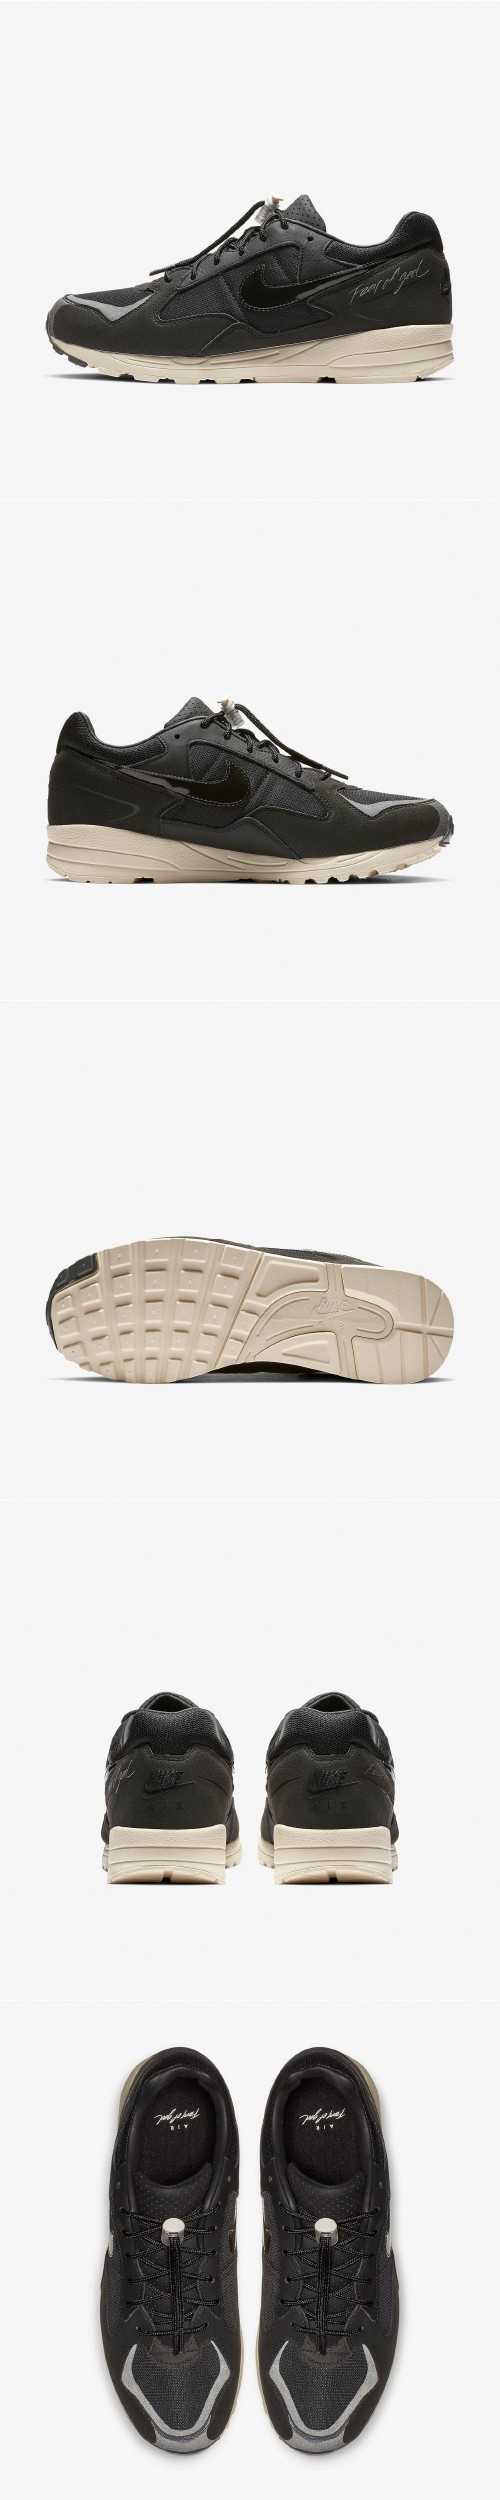 Nike Air Skylon II FOG 男鞋